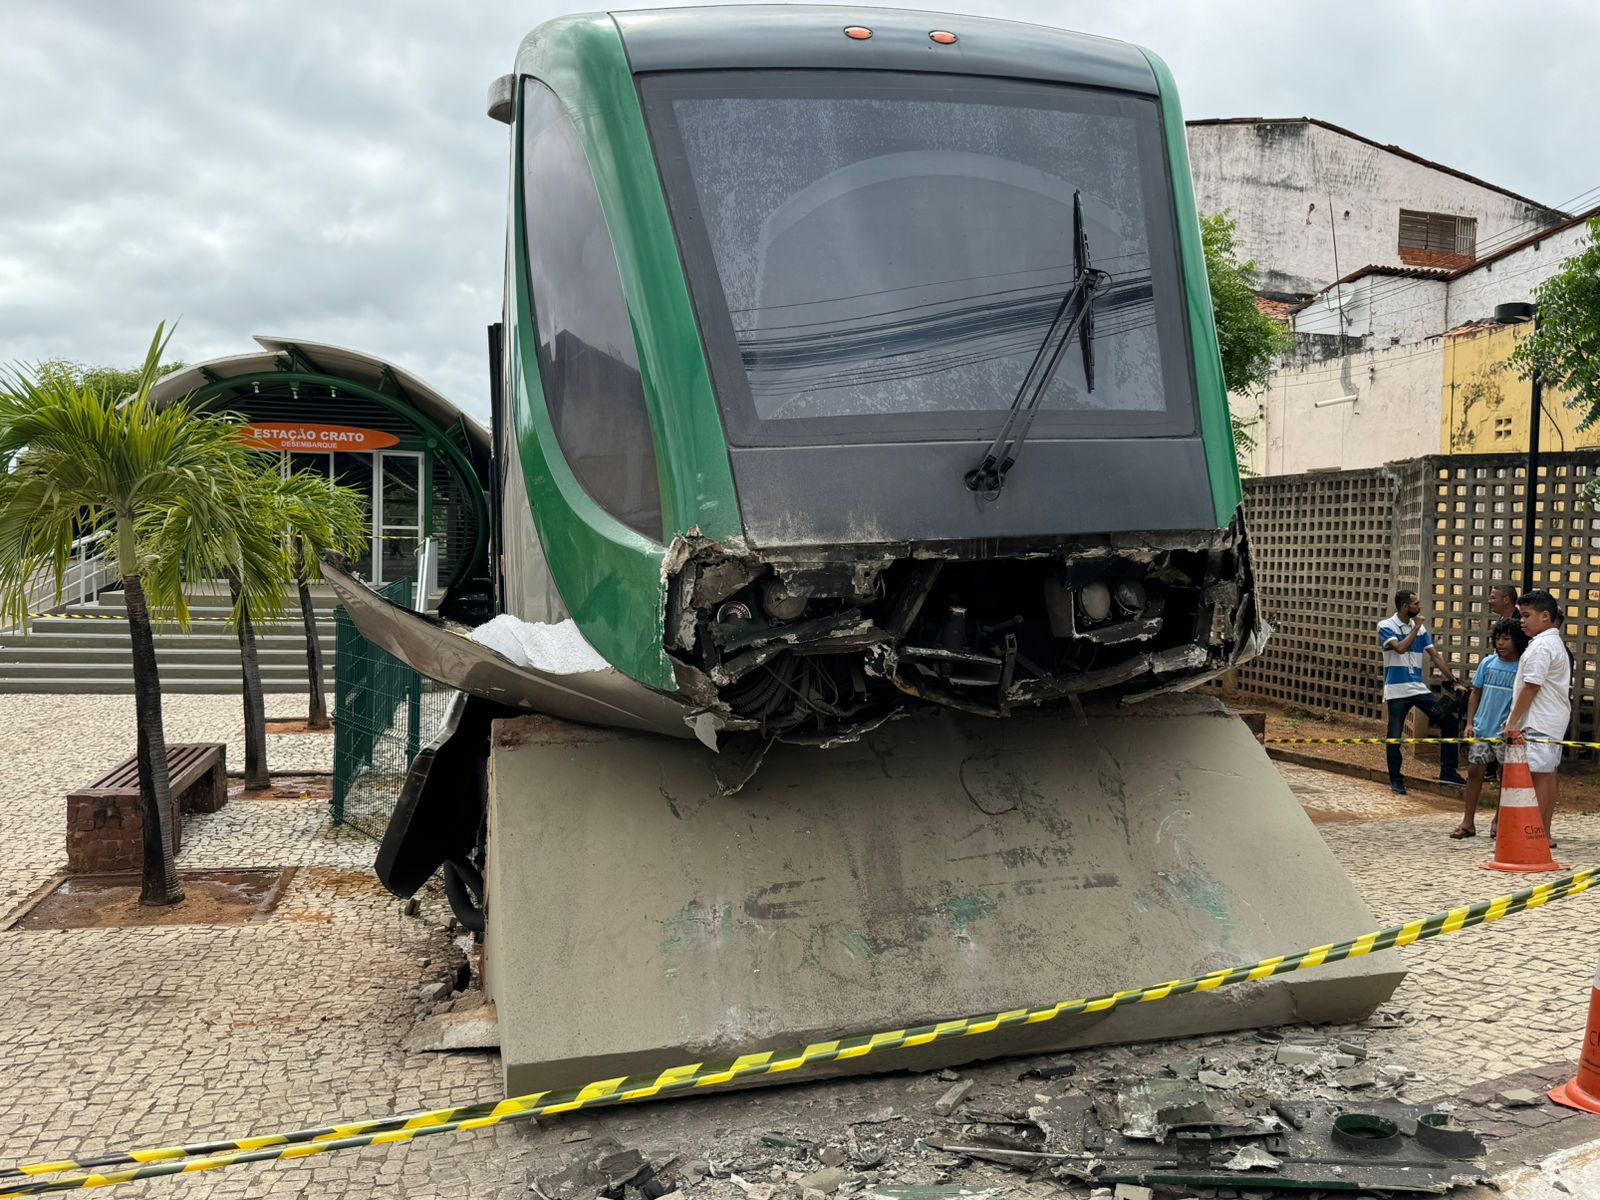 AO VIVO: Metrô do Cariri bate no muro de proteção na cidade do Crato e passageiros ficam feridos